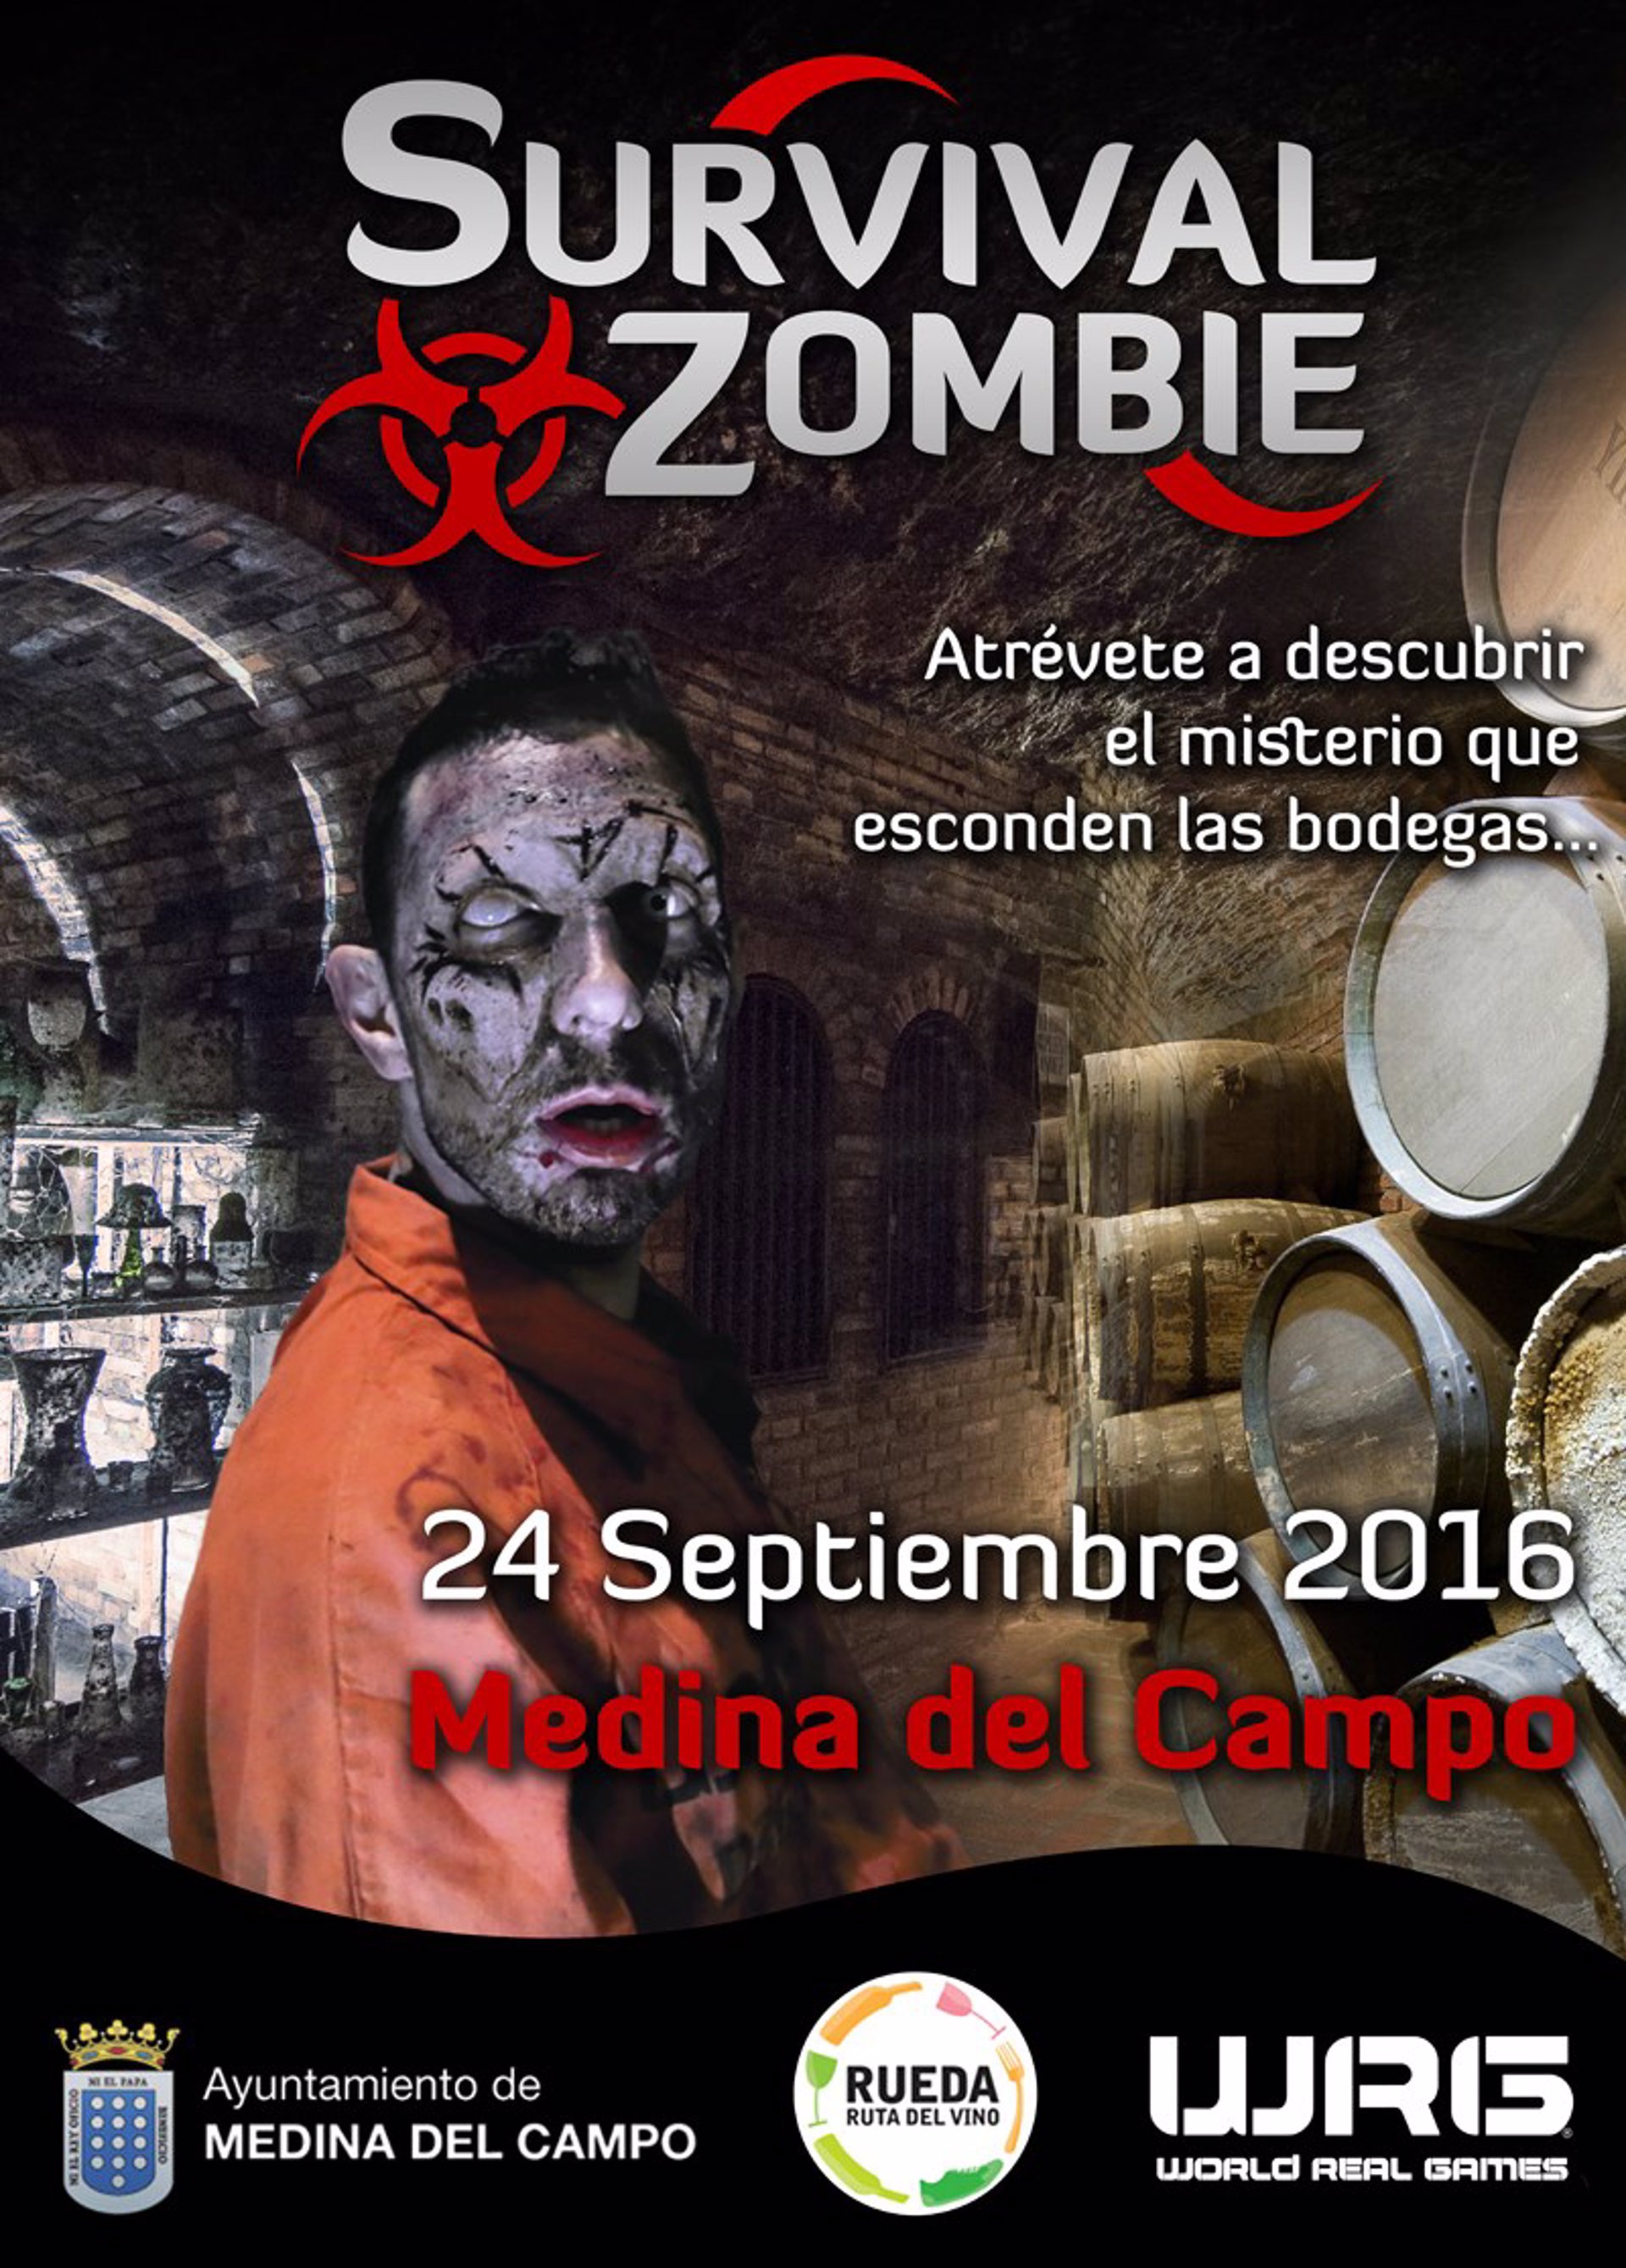 Survival Zombie en Medina del Campo (Madrid) el próximo 24 septiembre